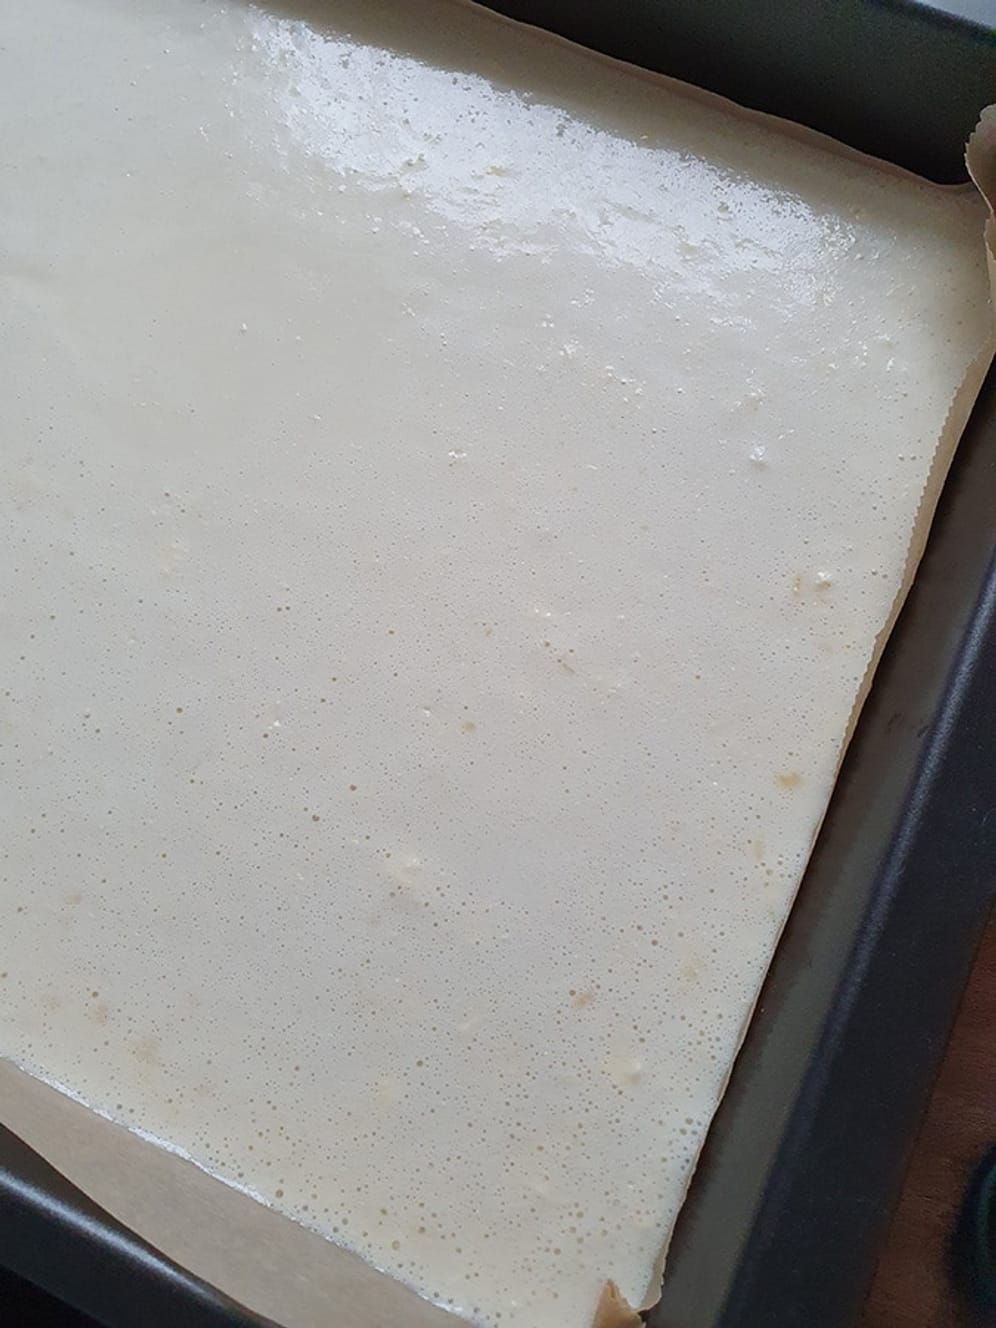 Verrühren Sie die Zutaten zu einem glatten, eher flüssigen Teig. Geben Sie den Teig dann einfach auf das Backblech und das Ganze vorsichtig in den Ofen auf die mittlere Schiene.